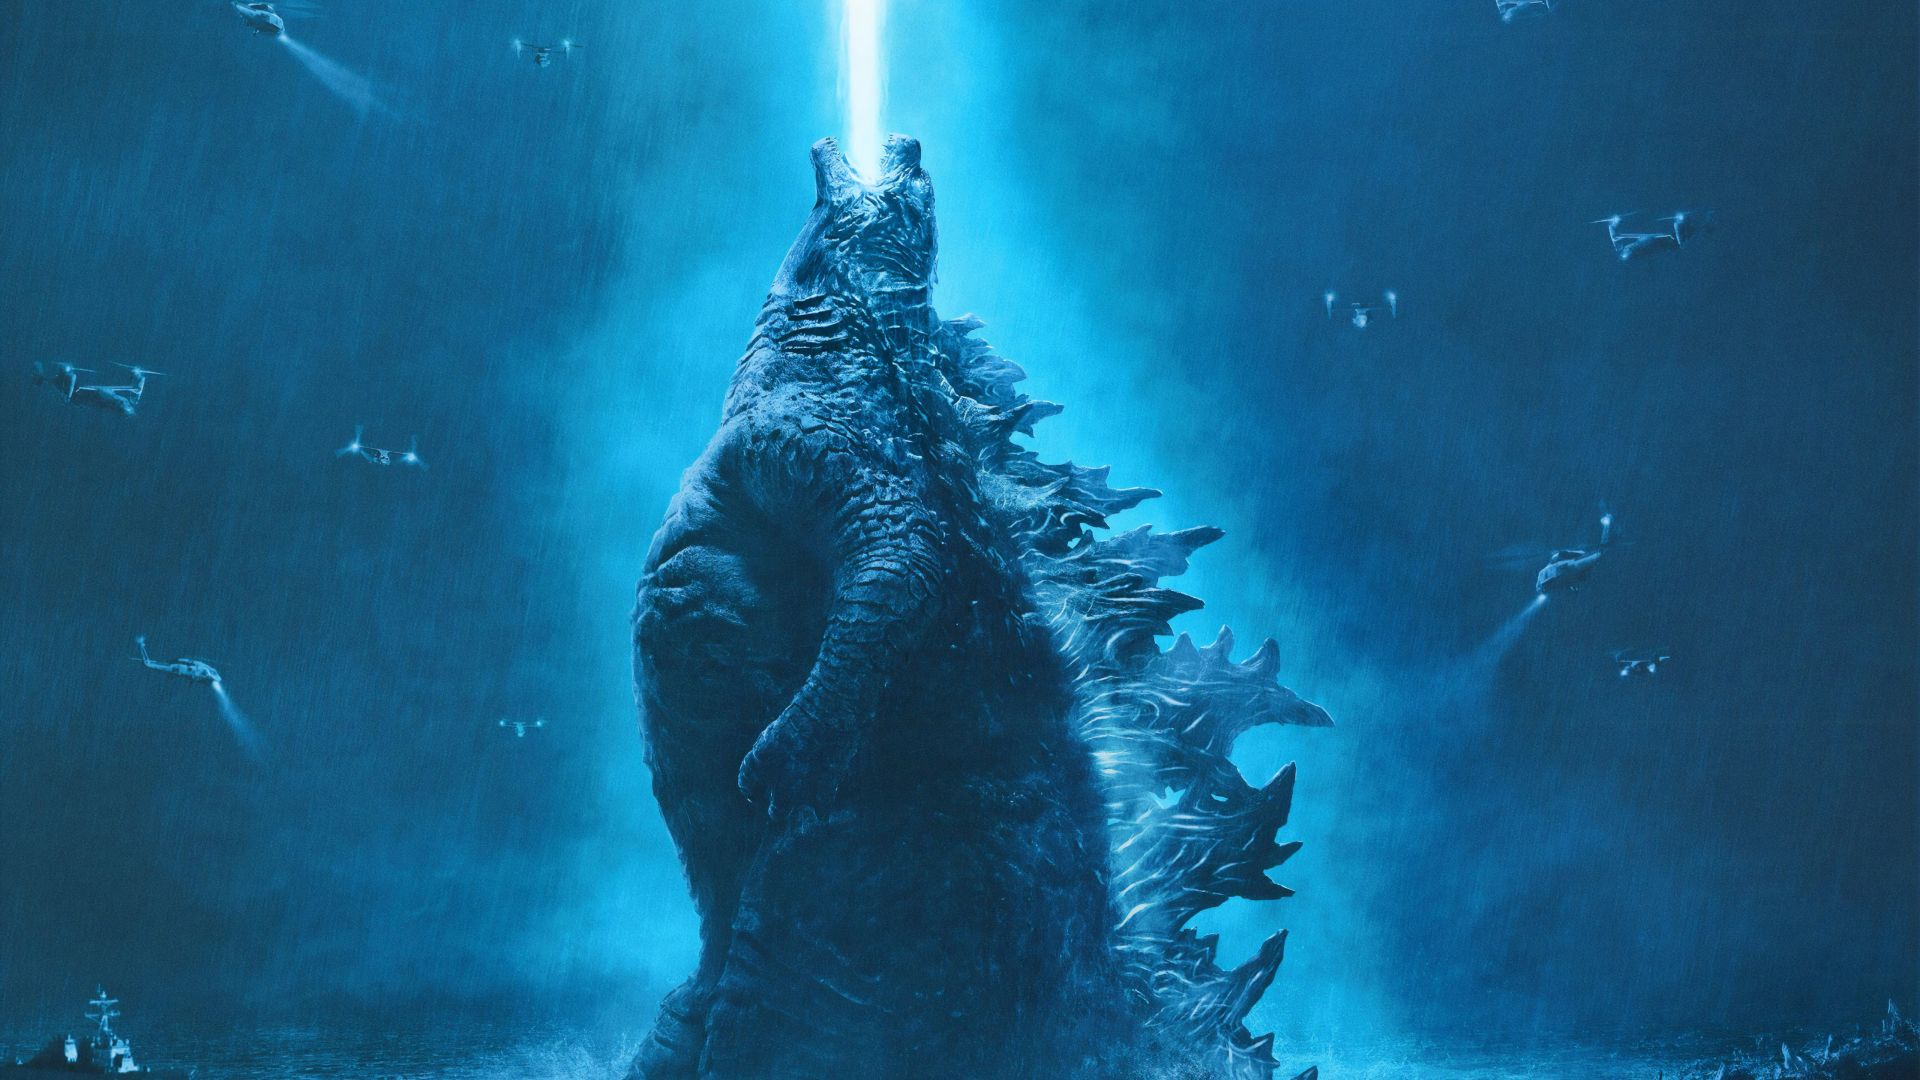 Godzilla 2019 Wallpapers